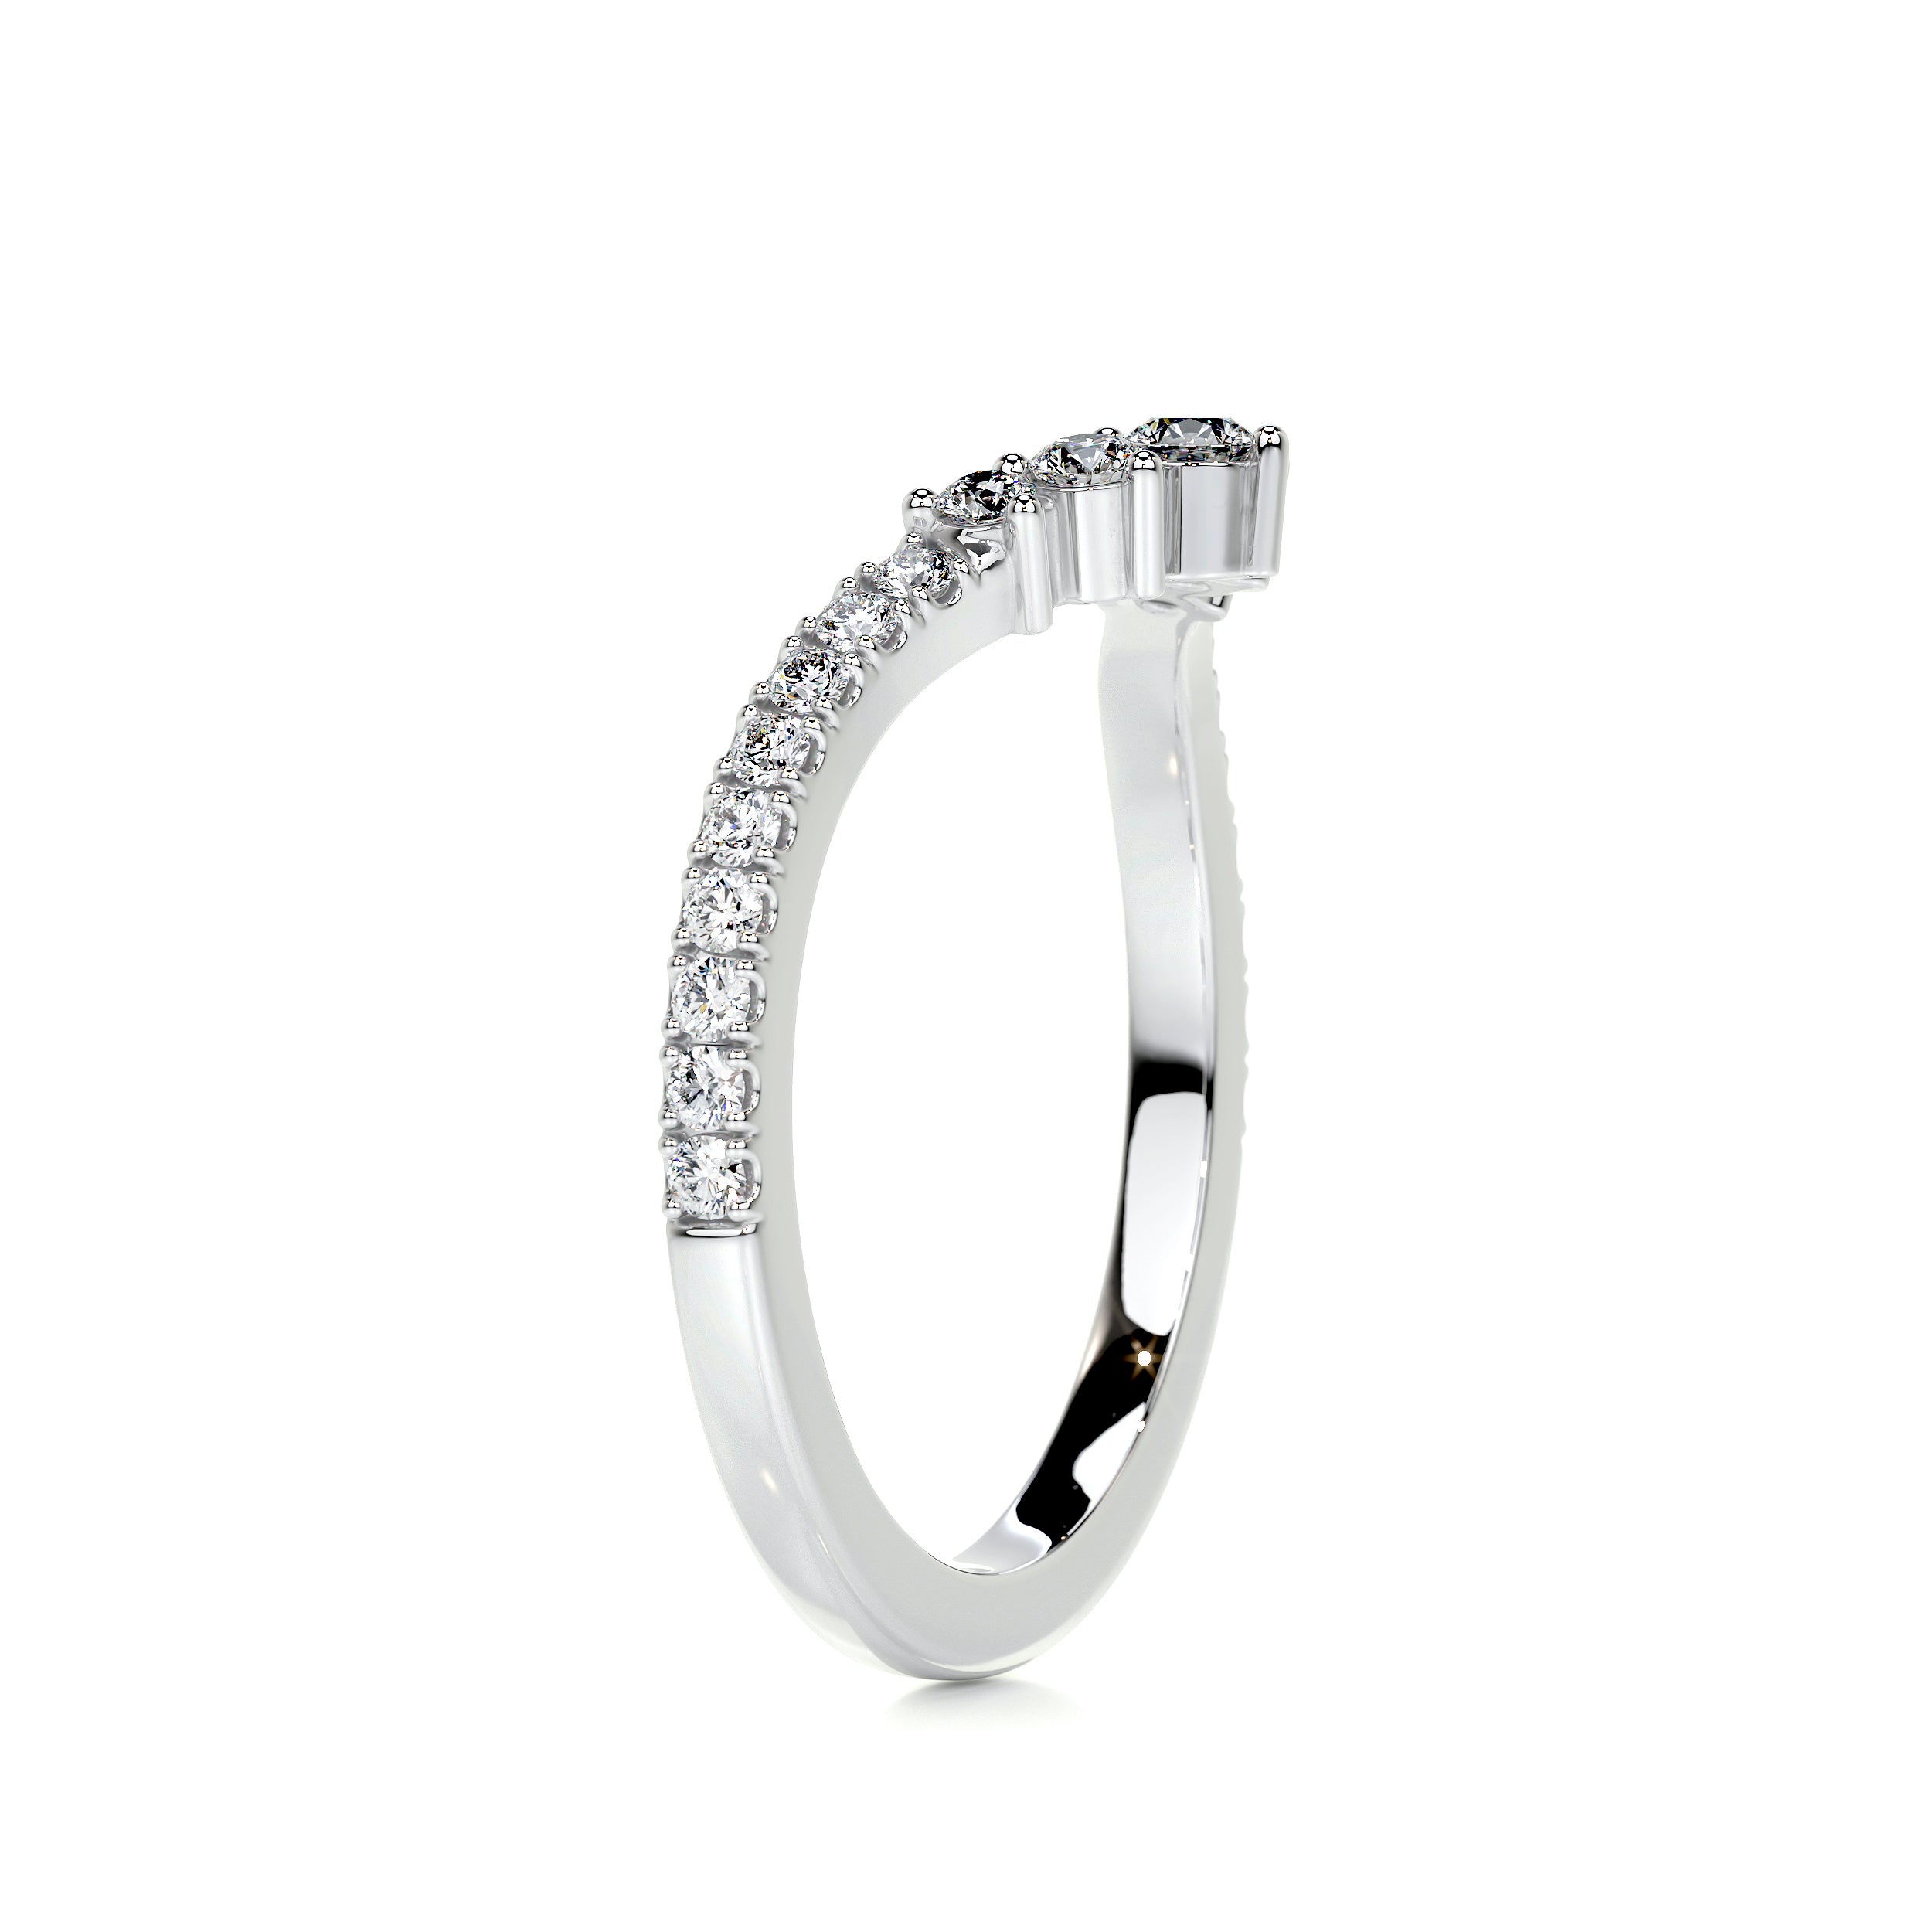 Mia Diamond Wedding Ring   (0.35 Carat) -18K White Gold